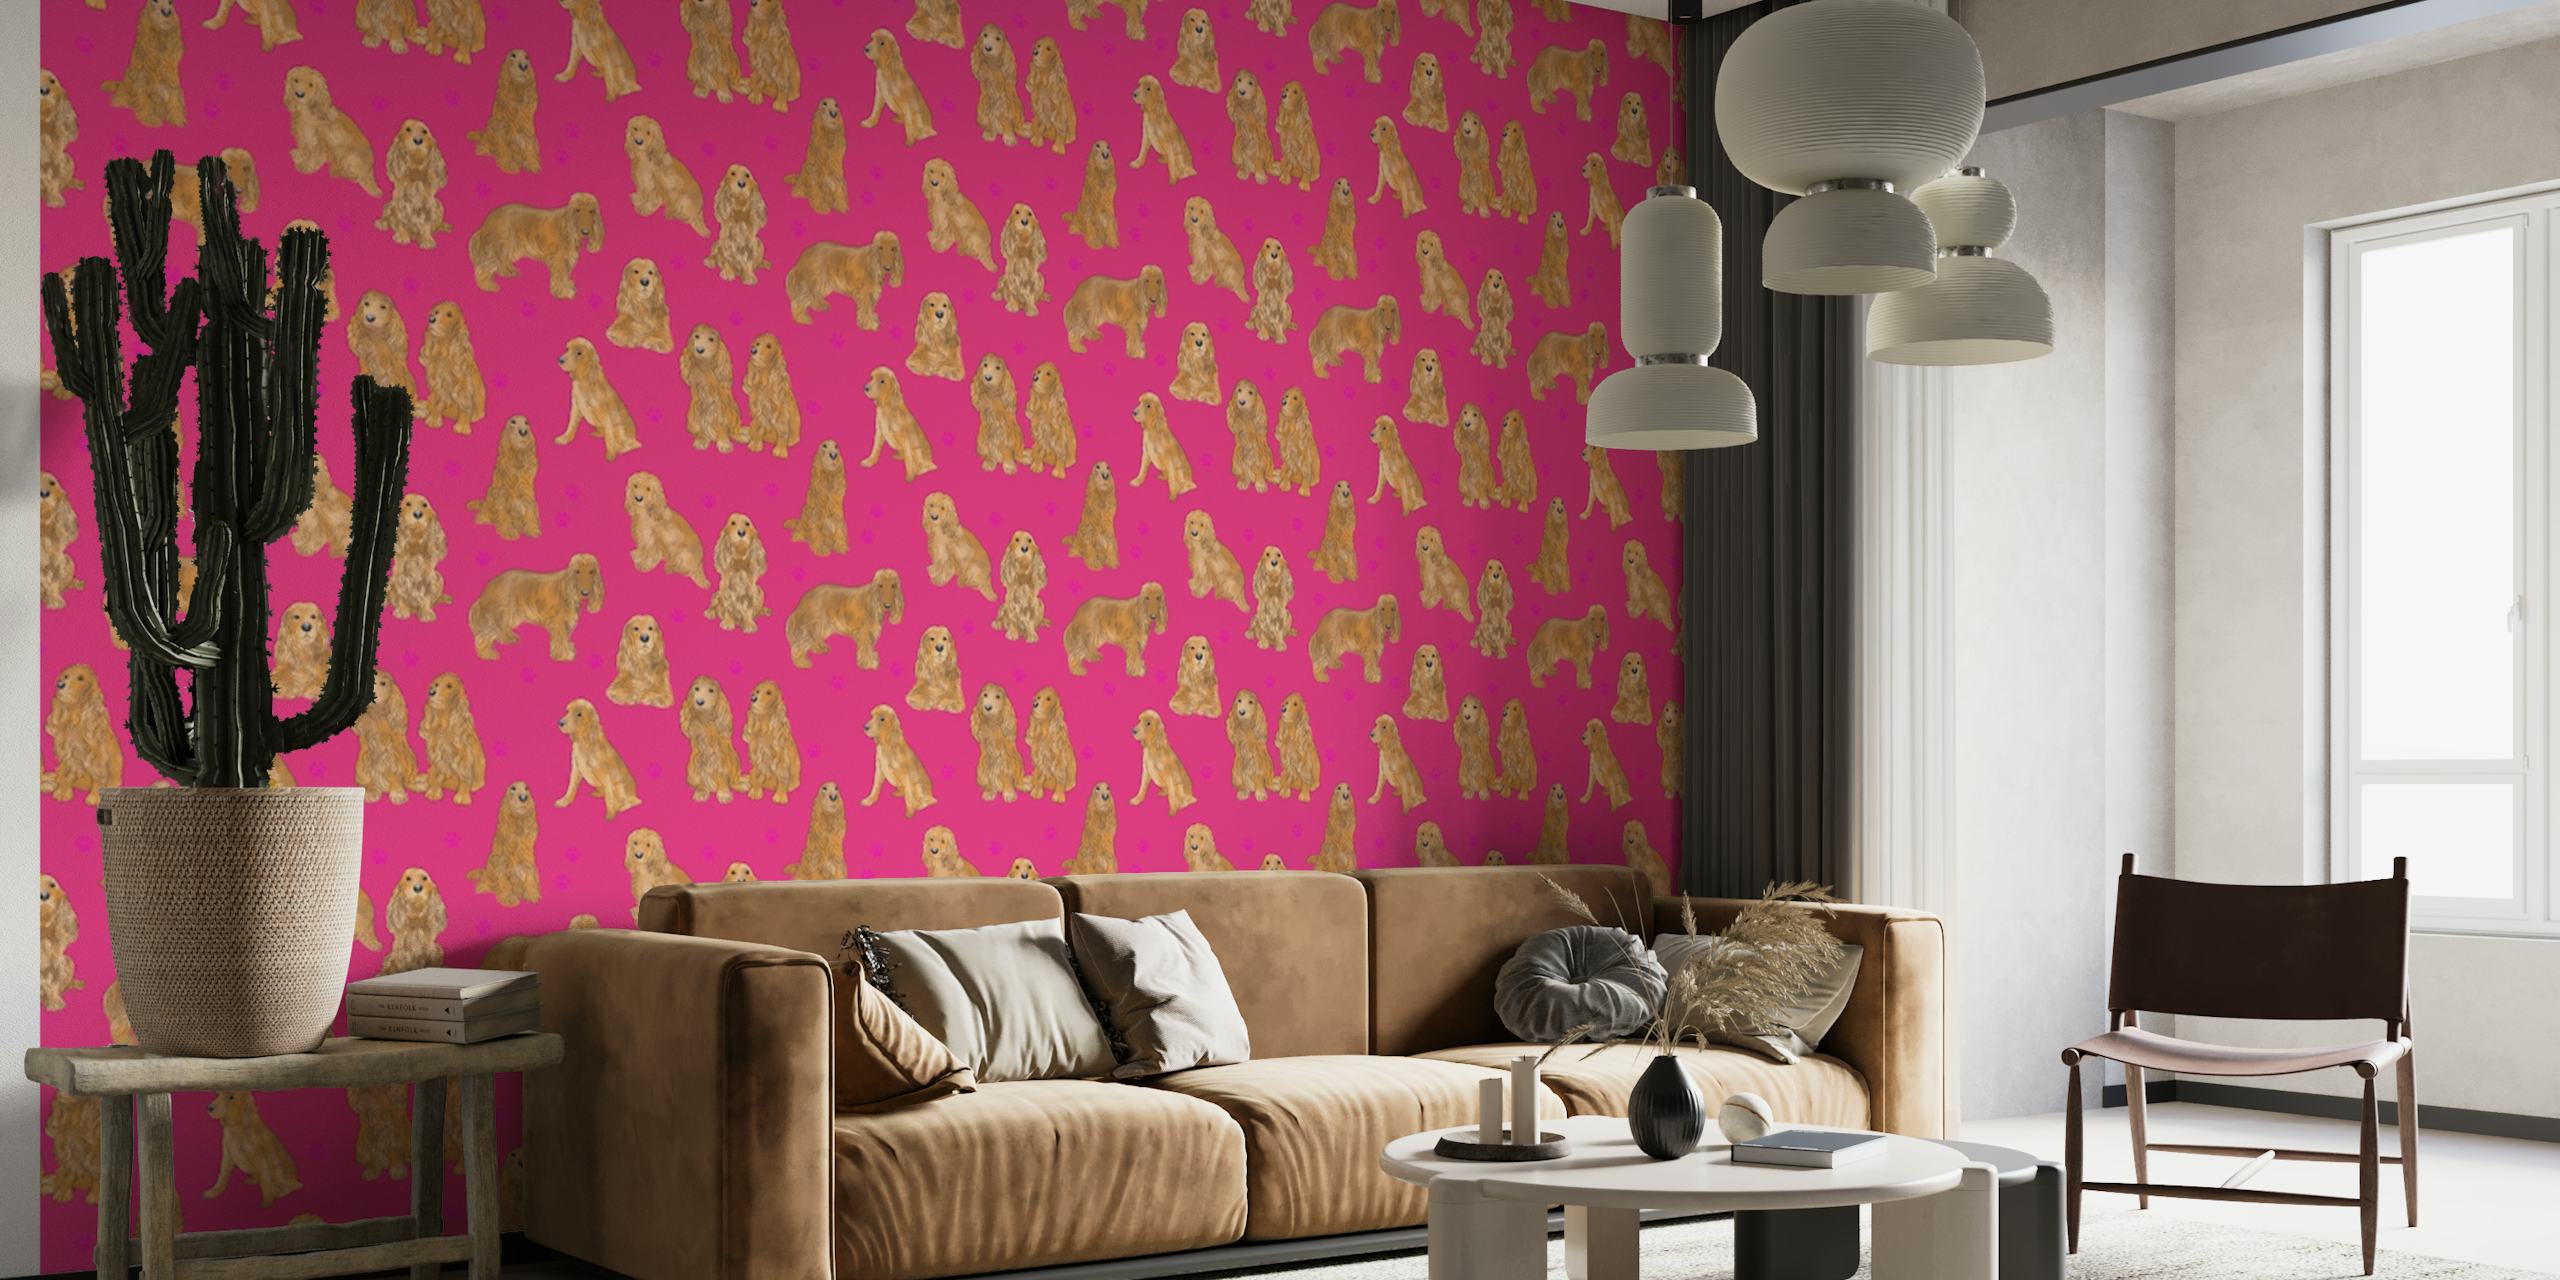 Papier peint mural avec motif de chiens Cocker Spaniel sur fond rose